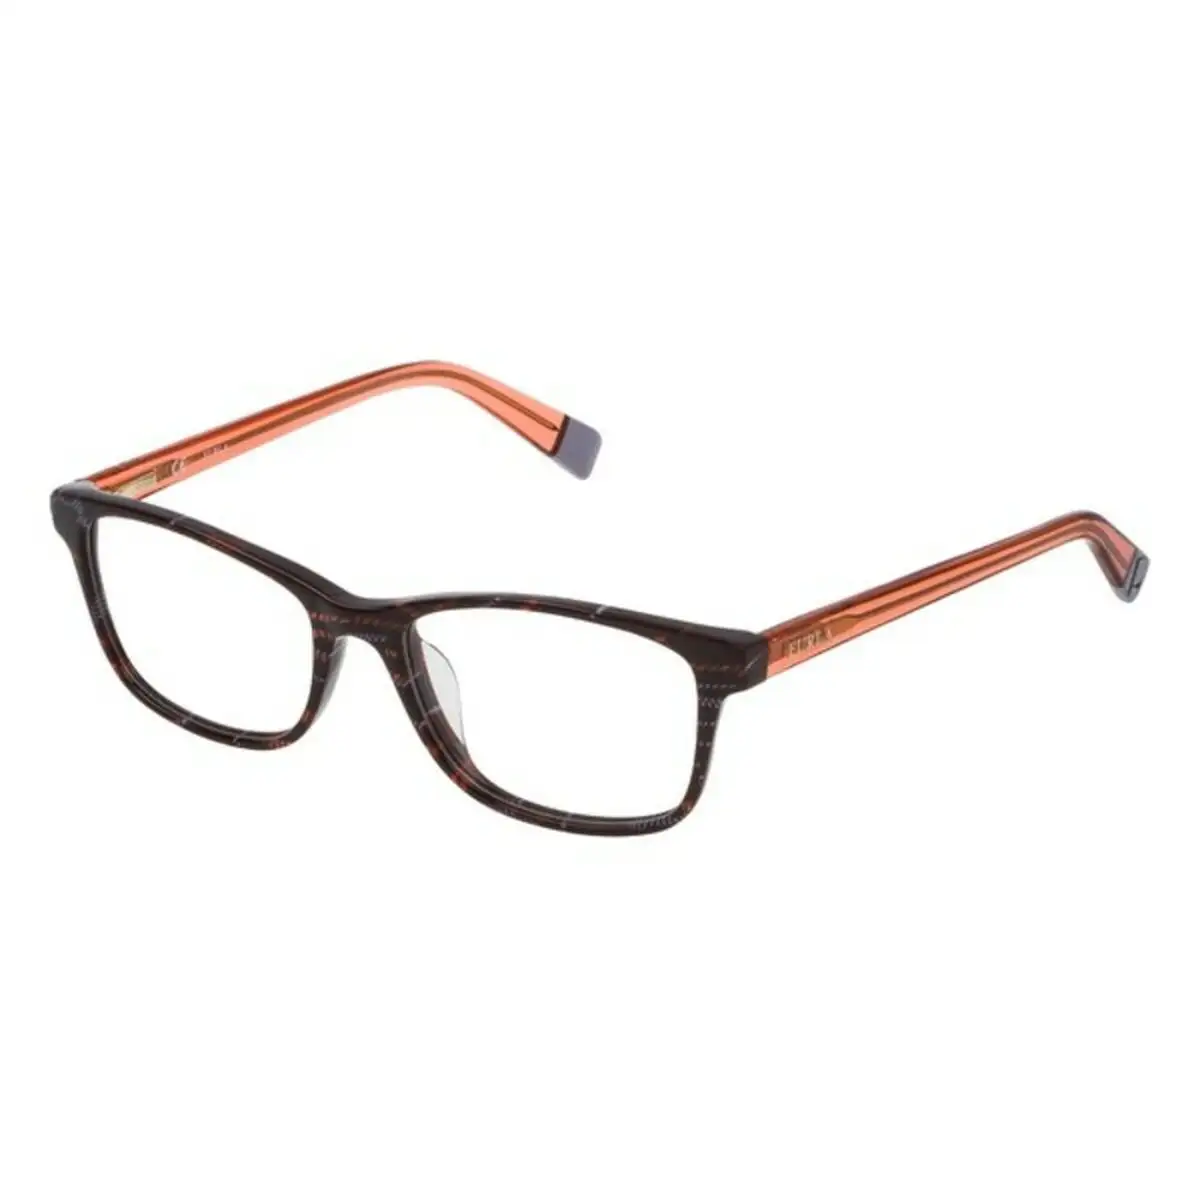 Monture de lunettes femme furla vfu076520d08 o 52 mm _8797. DIAYTAR SENEGAL - Votre Plateforme Shopping de Confiance. Naviguez à travers nos rayons et choisissez des produits fiables qui répondent à vos besoins quotidiens.